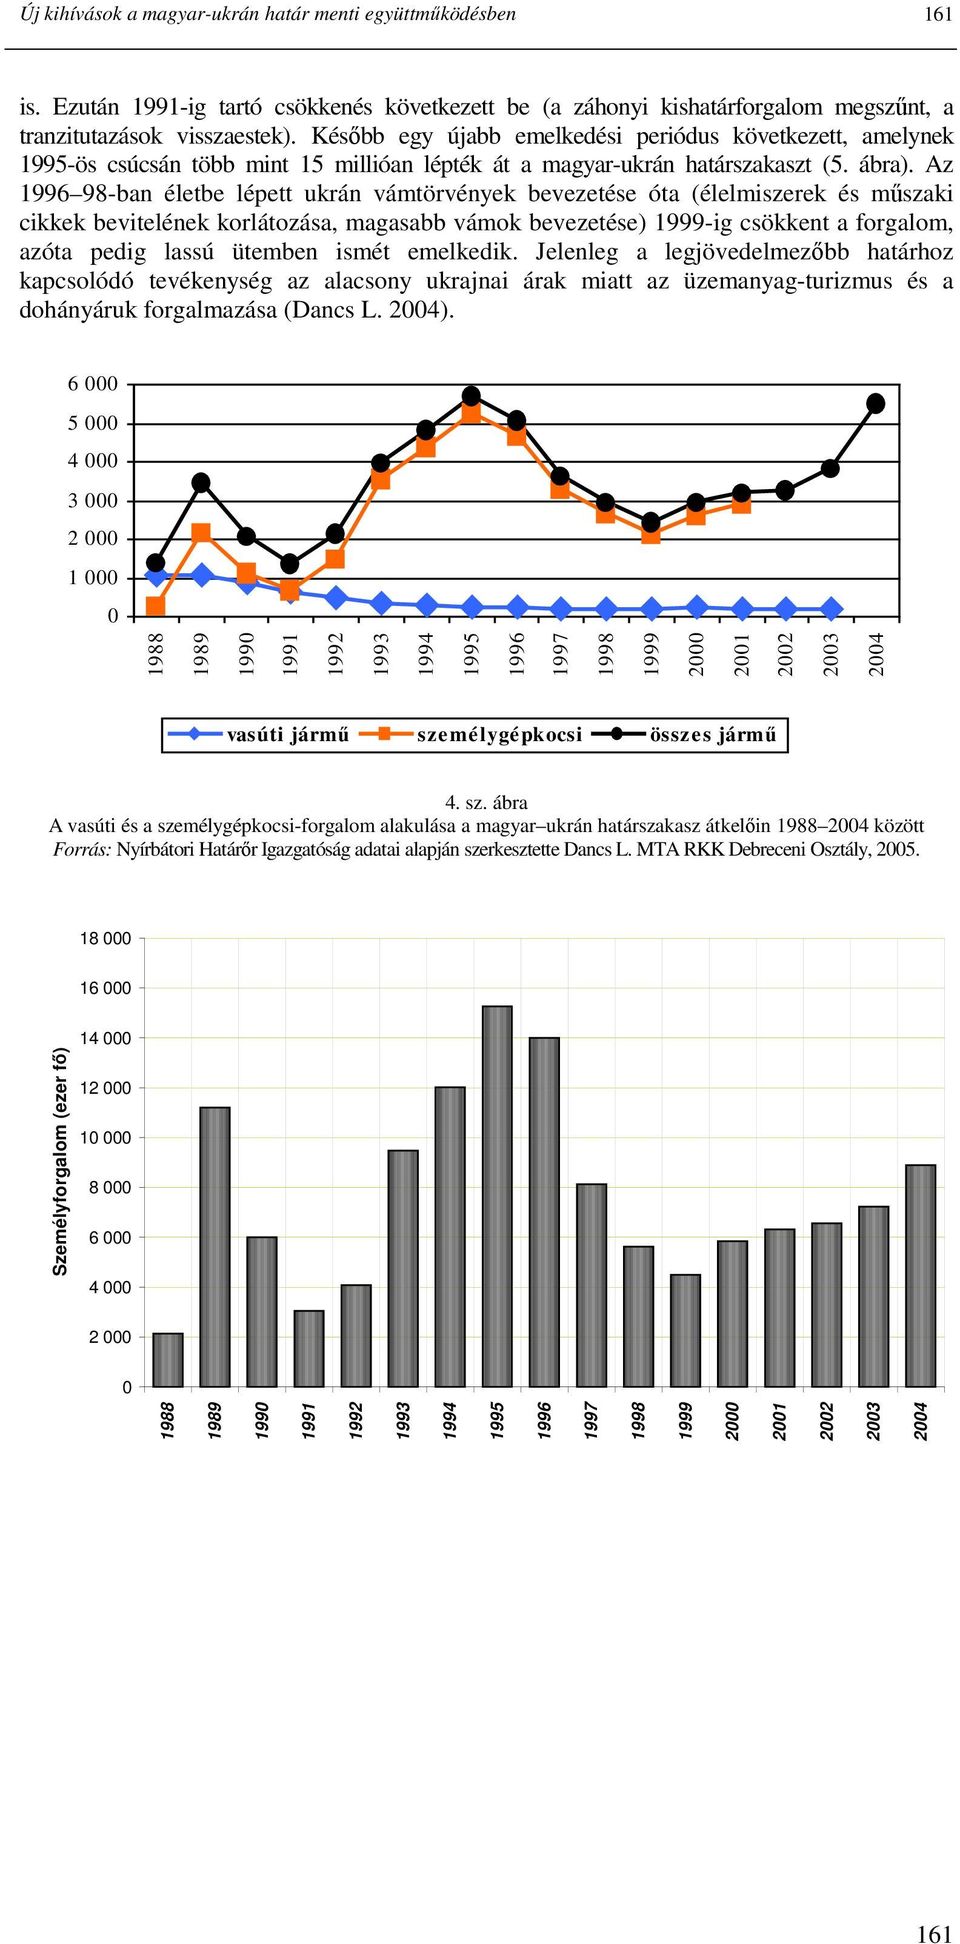 Az 1996 98-ban életbe lépett ukrán vámtörvények bevezetése óta (élelmiszerek és mőszaki cikkek bevitelének korlátozása, magasabb vámok bevezetése) 1999-ig csökkent a forgalom, azóta pedig lassú